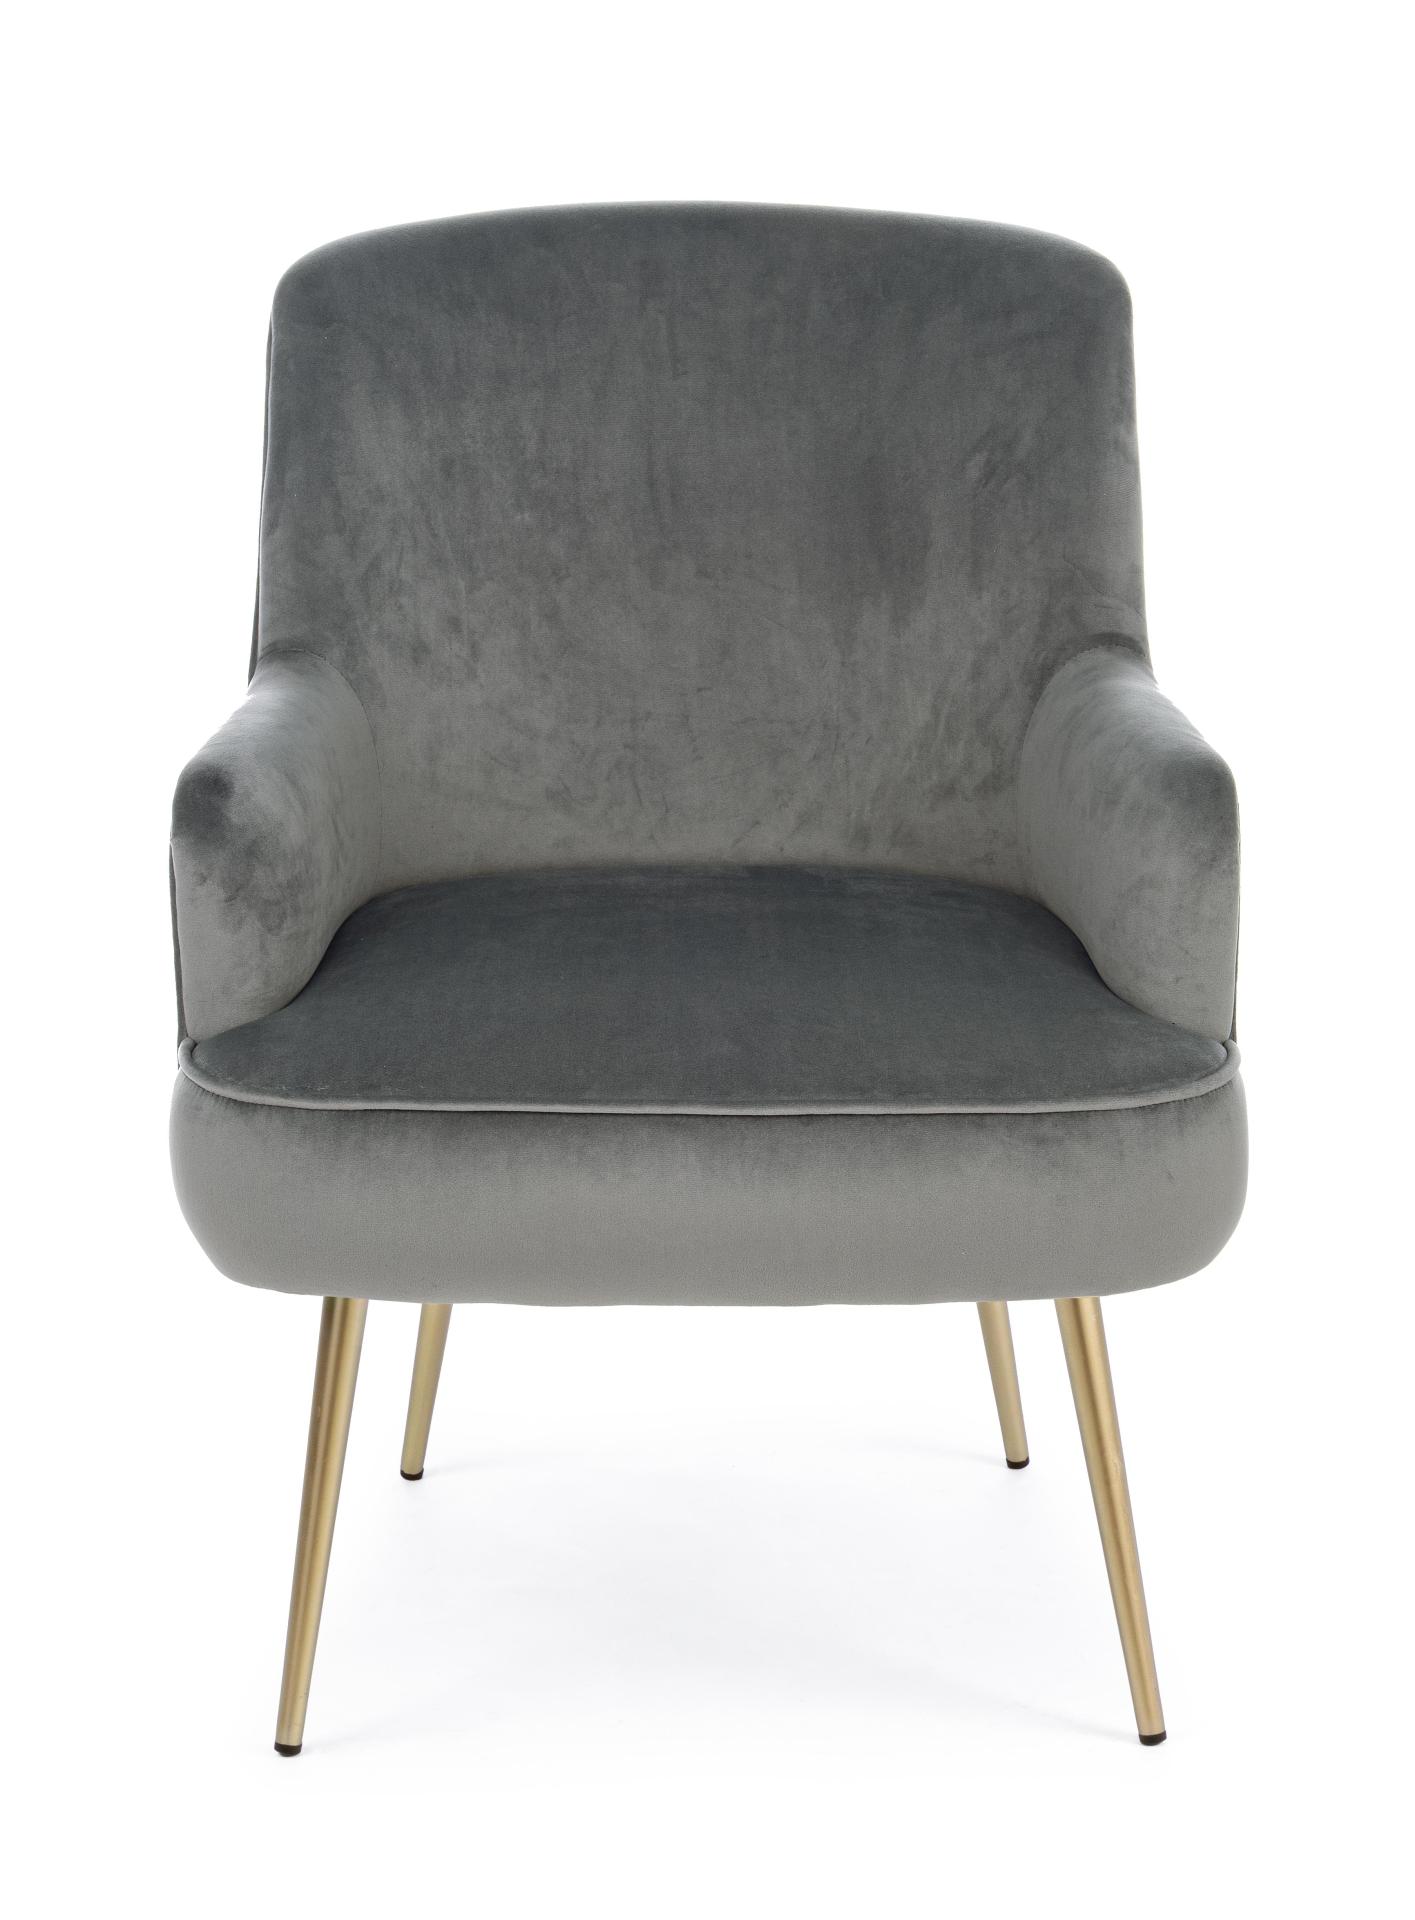 Der Sessel Clelia überzeugt mit seinem modernen Design. Gefertigt wurde er aus Stoff in Samt-Optik, welcher einen grauen Farbton besitzt. Das Gestell ist aus Metall und hat eine goldene Farbe. Der Sessel besitzt eine Sitzhöhe von 43 cm. Die Breite beträgt